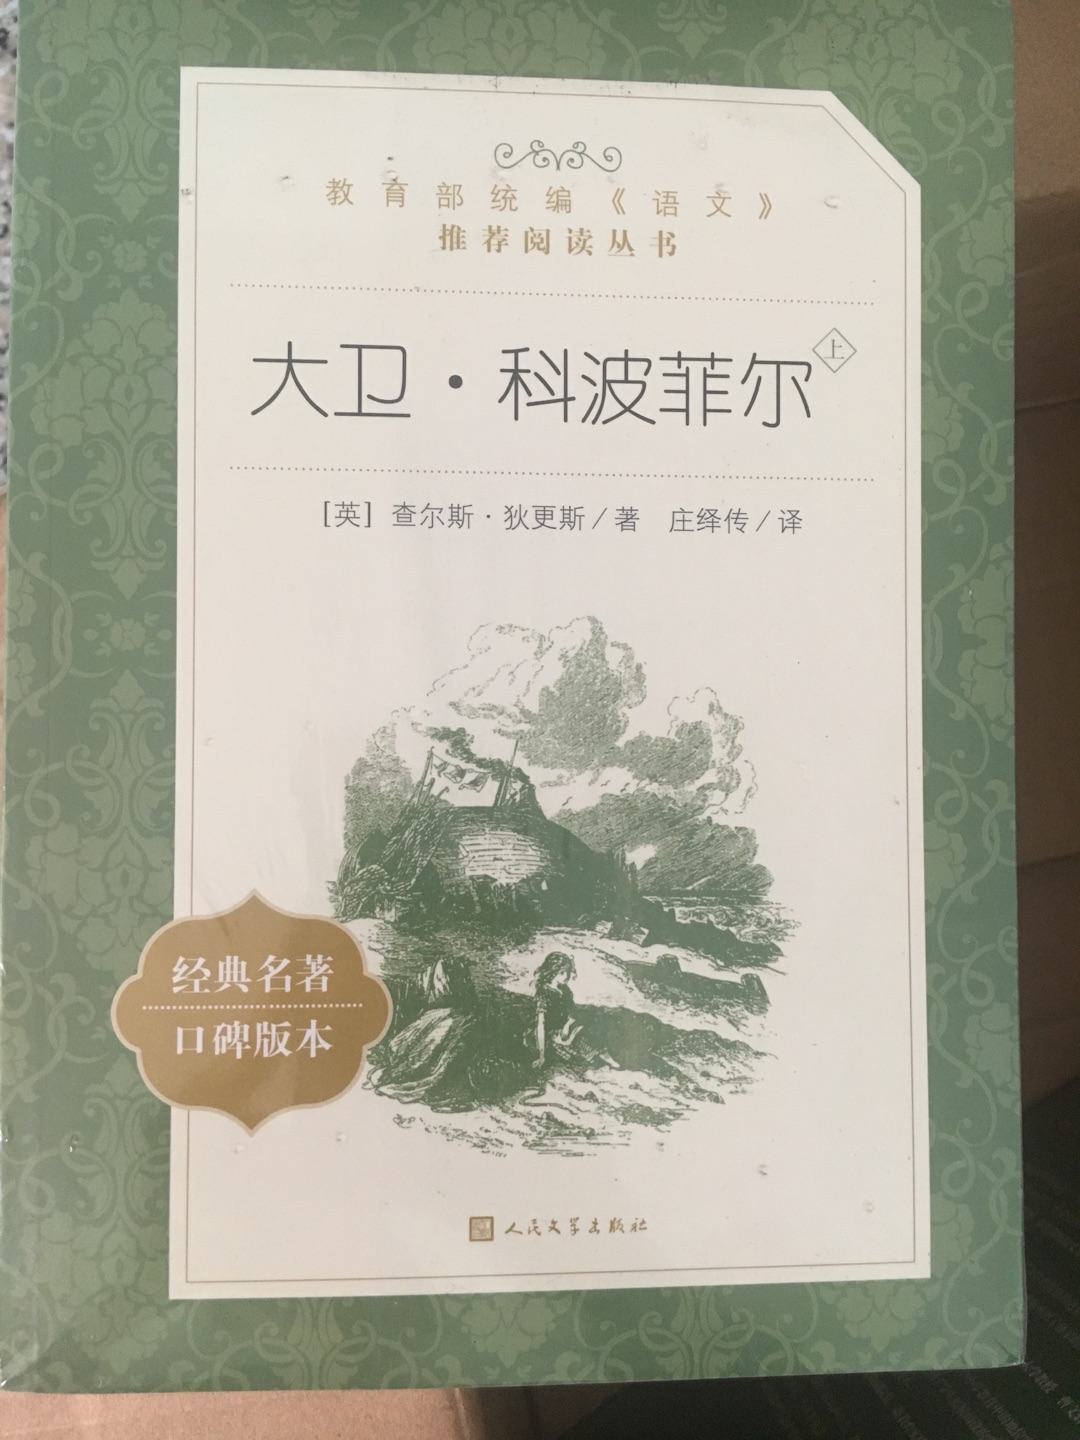 这是非常出名的图书，看不懂外语的，看中文的吧